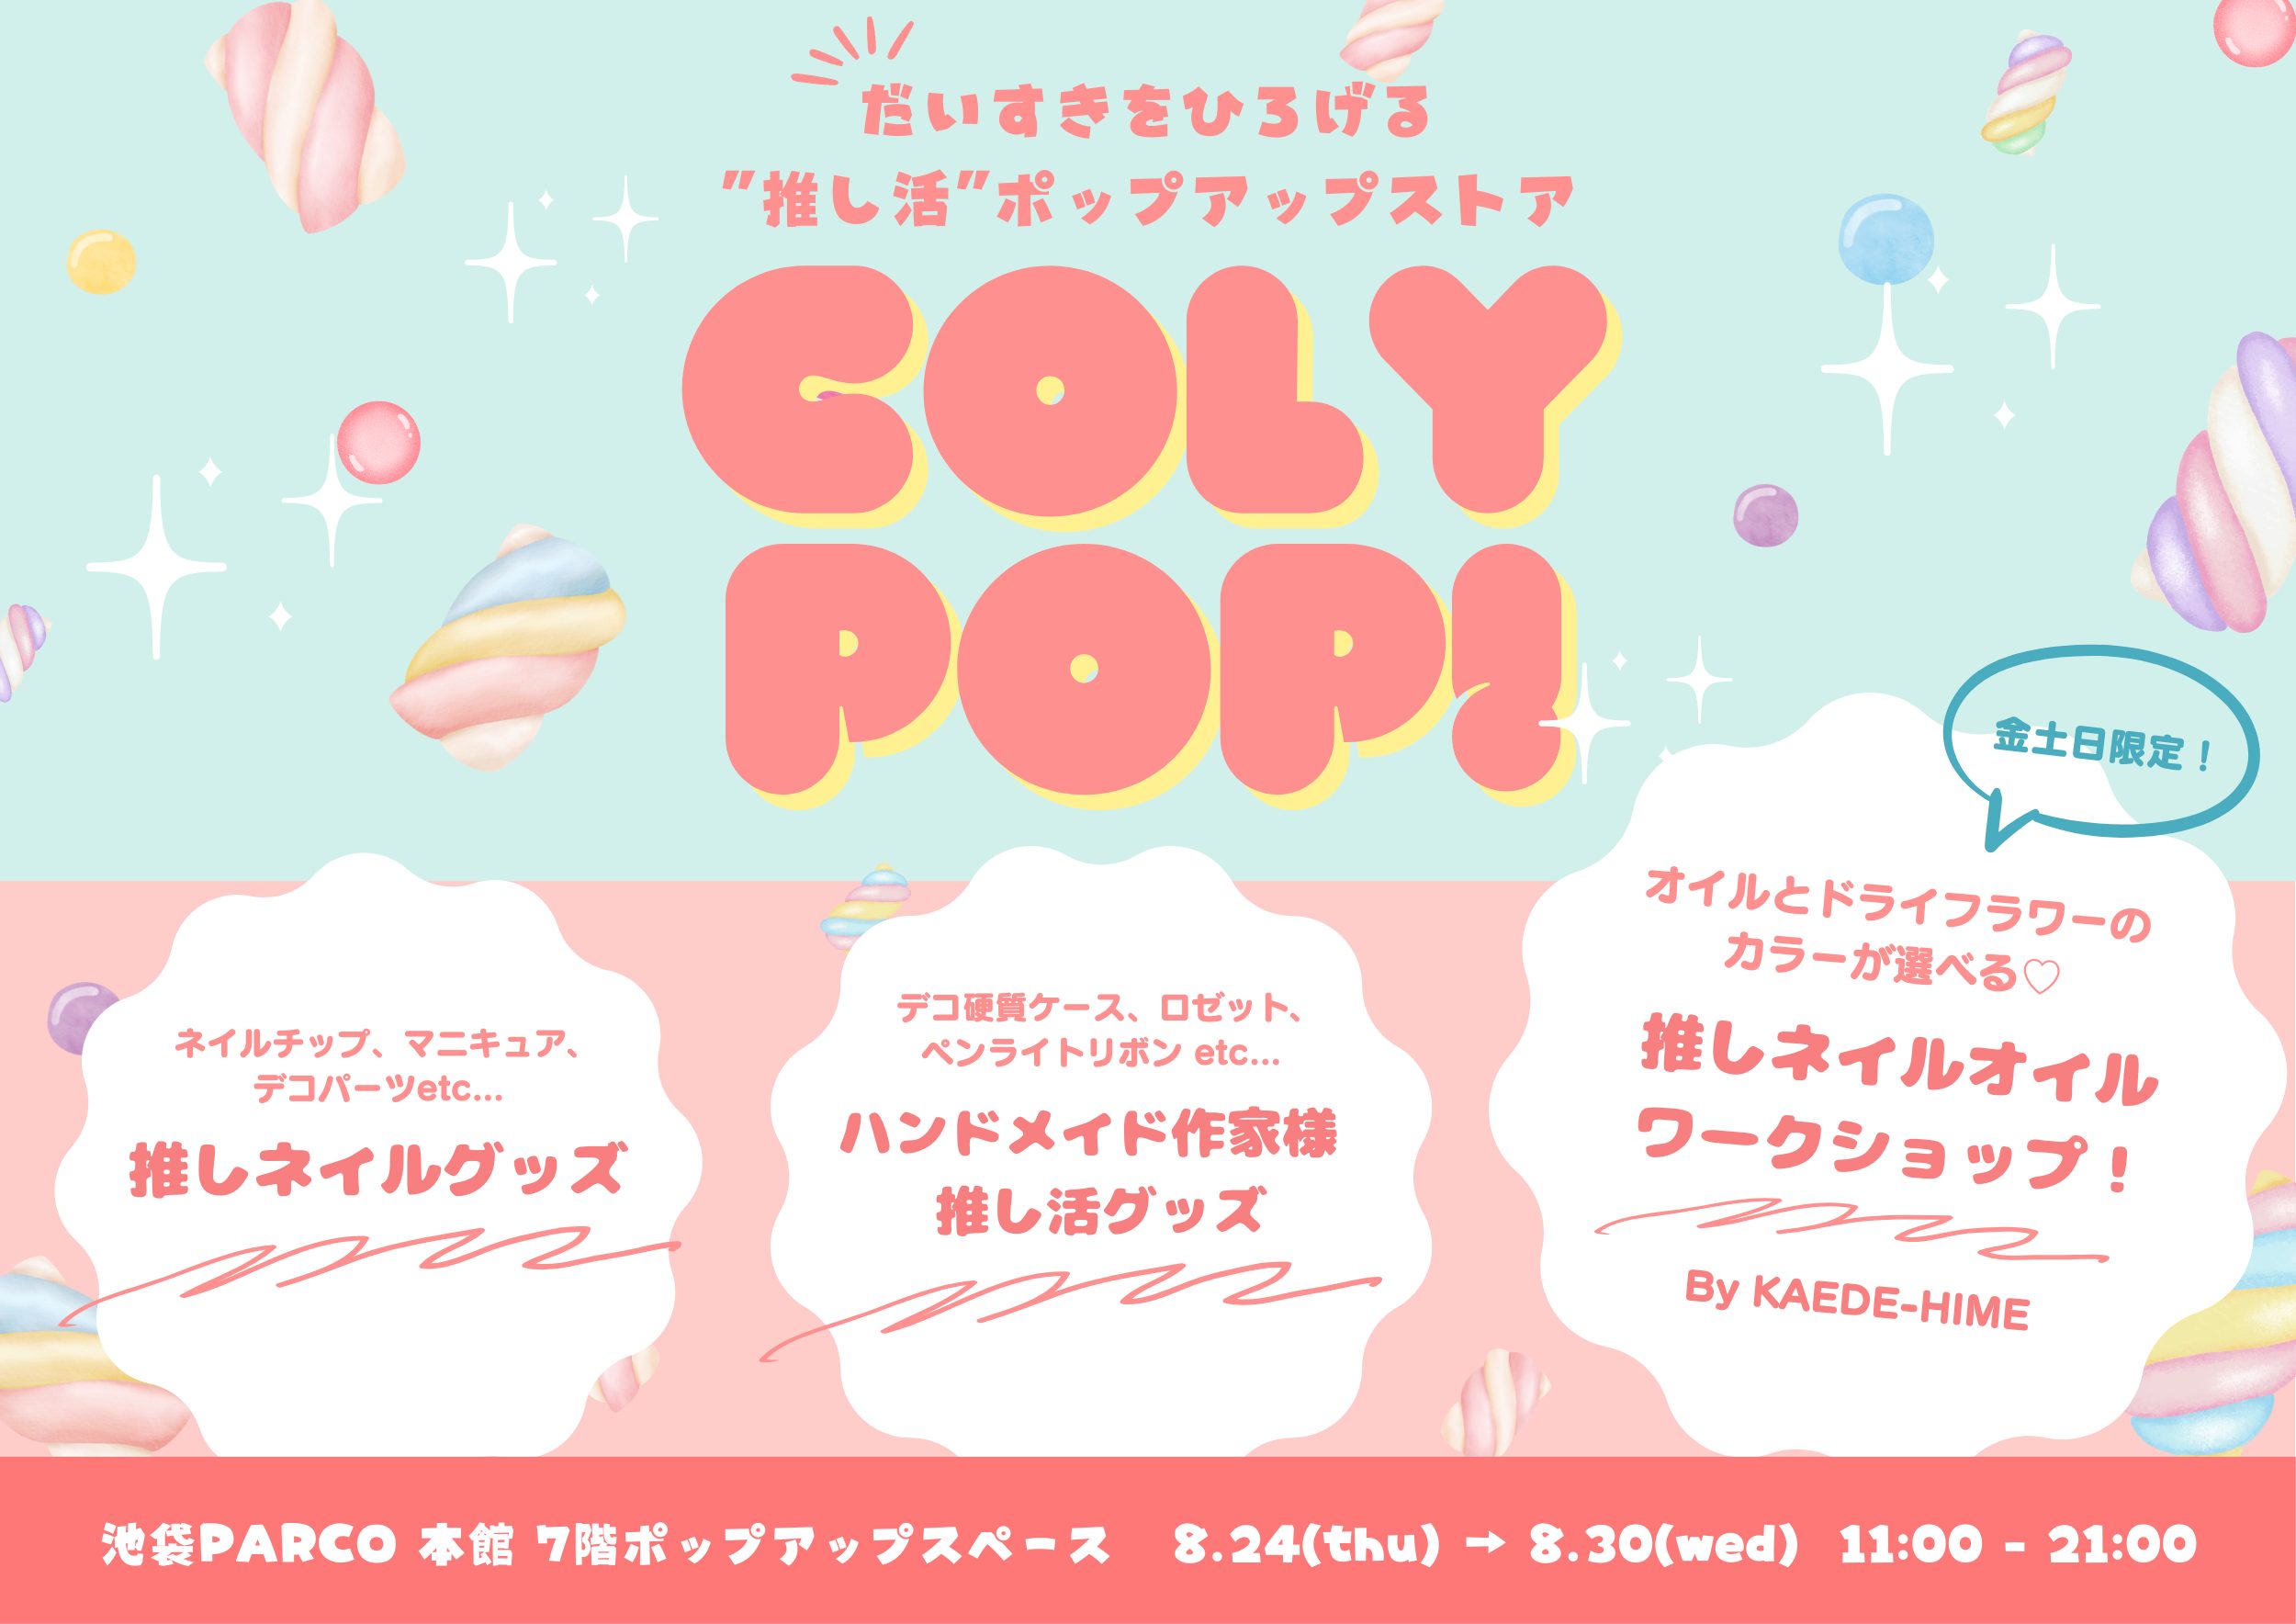 推し活ポップアップストア「coly pop!」開催のお知らせ